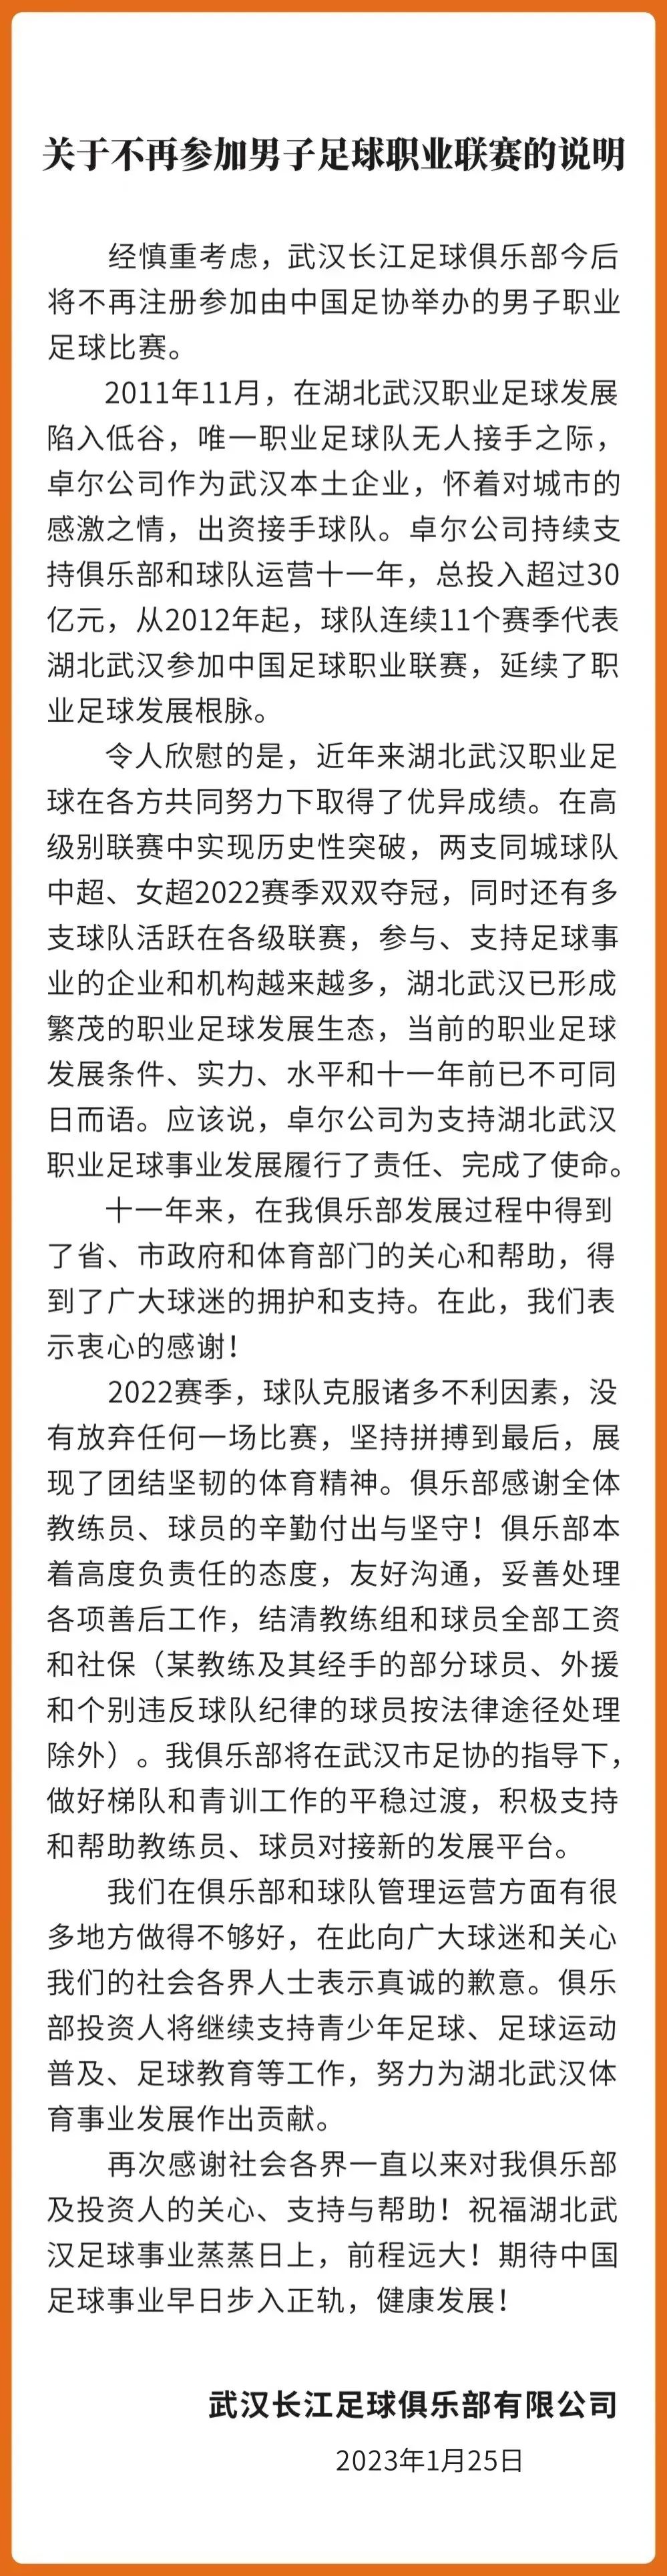 近4个赛季已有4支中超队解散：天津天海、江苏、重庆、武汉长江